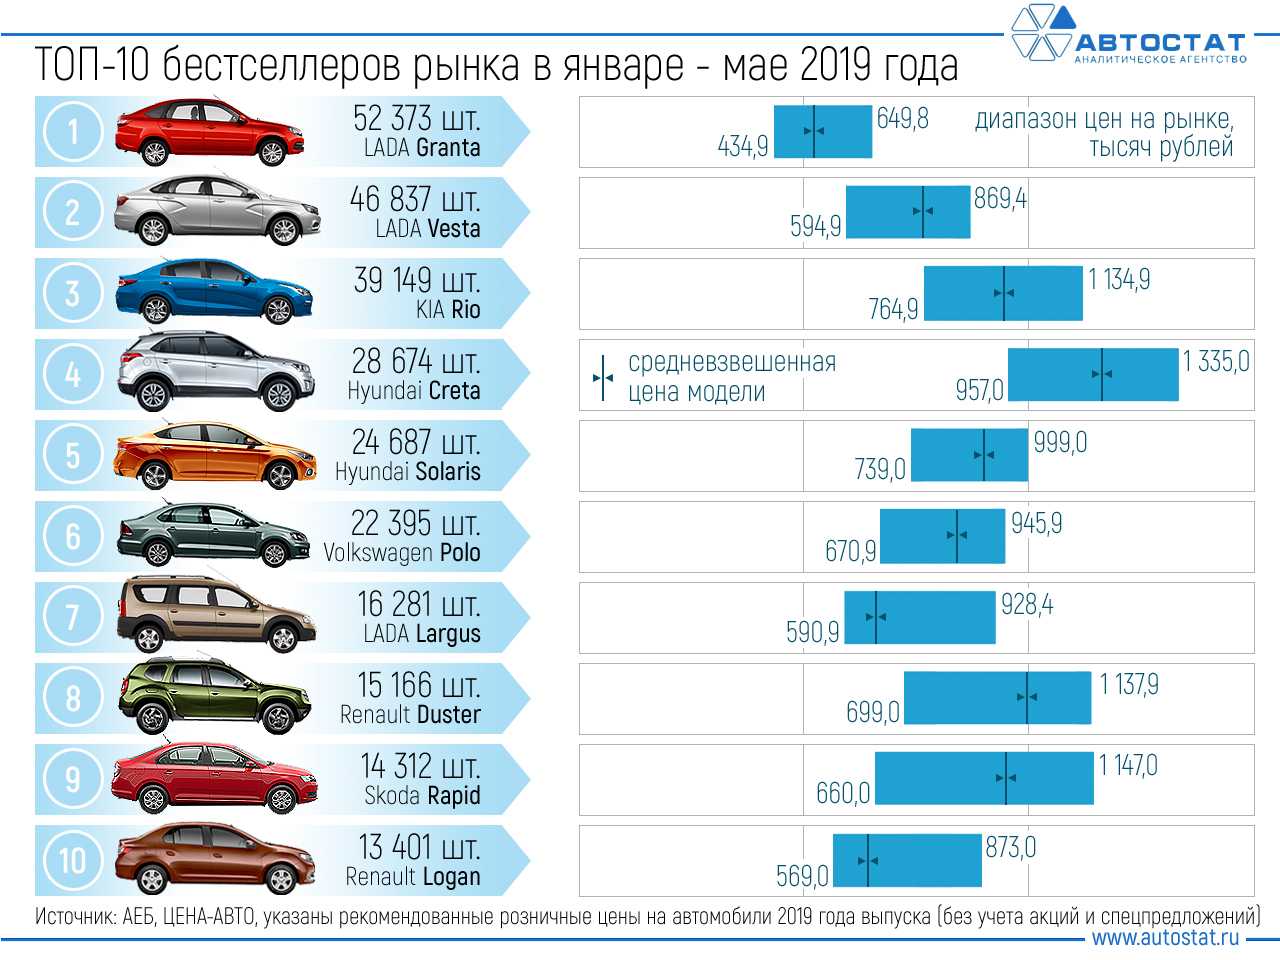 Где собирают все популярные автомобили в россии | dr1ver.ru